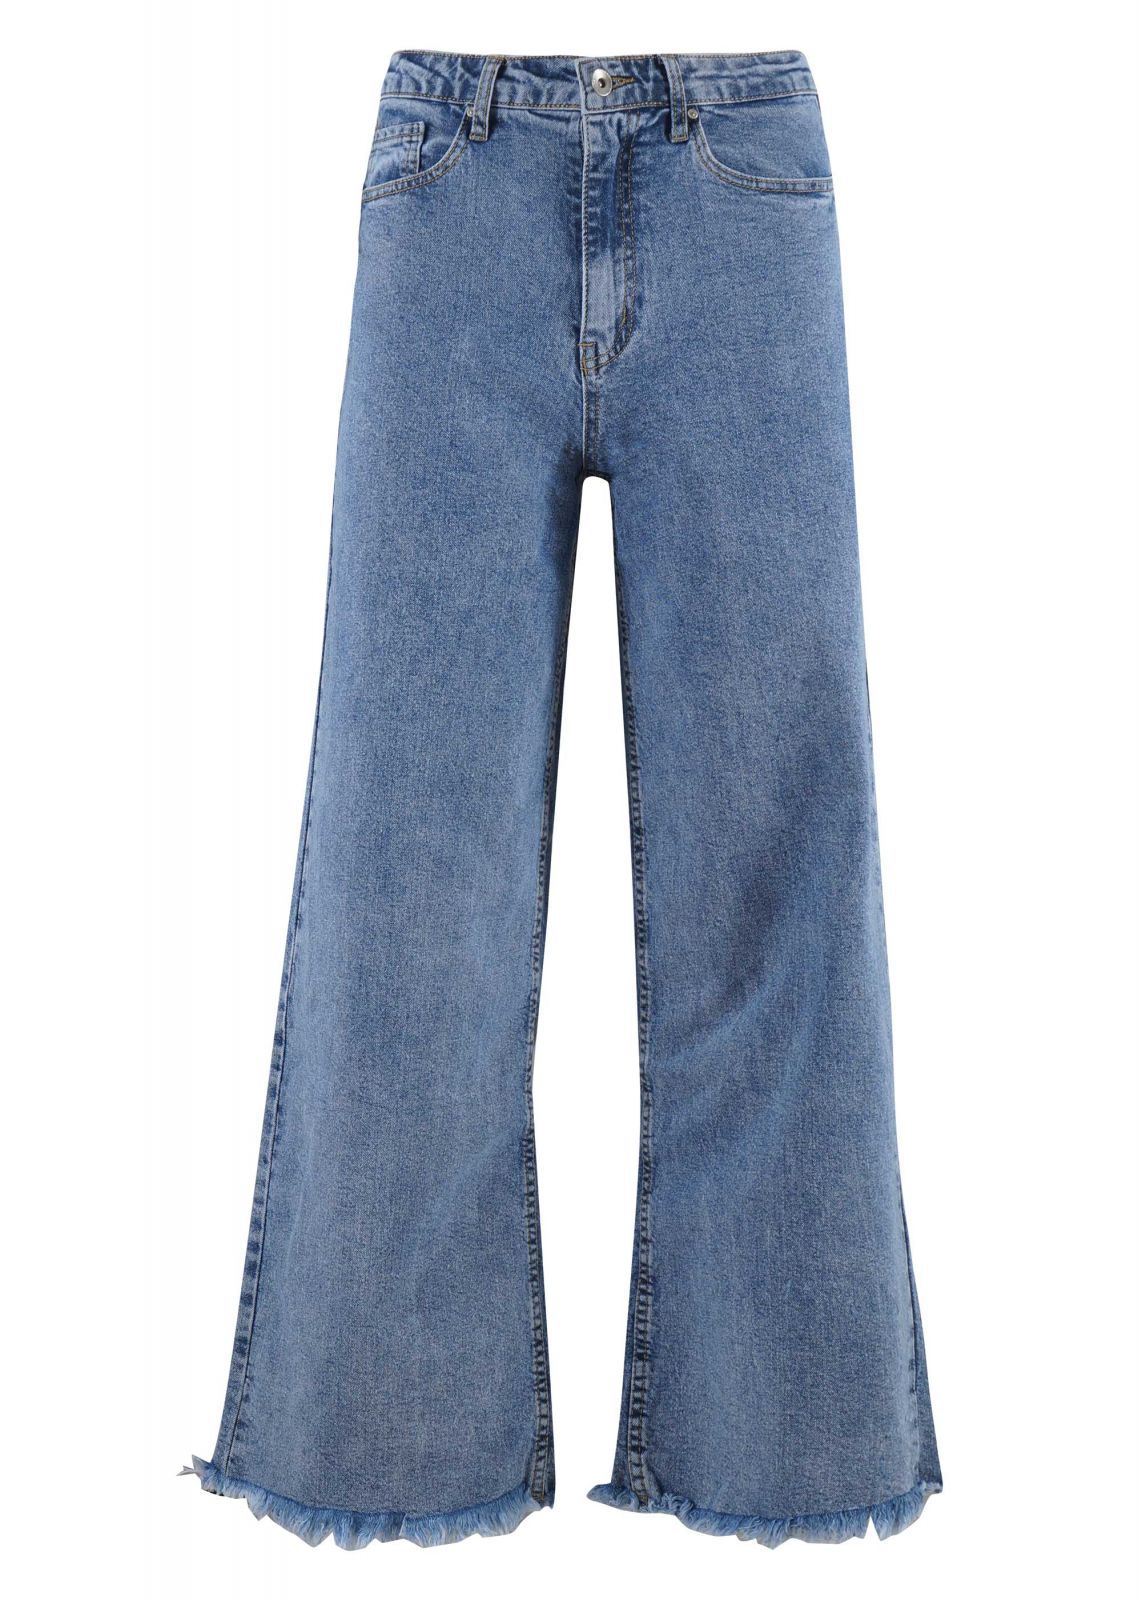 Γυναικεία jean παντελόνα. Denim collection